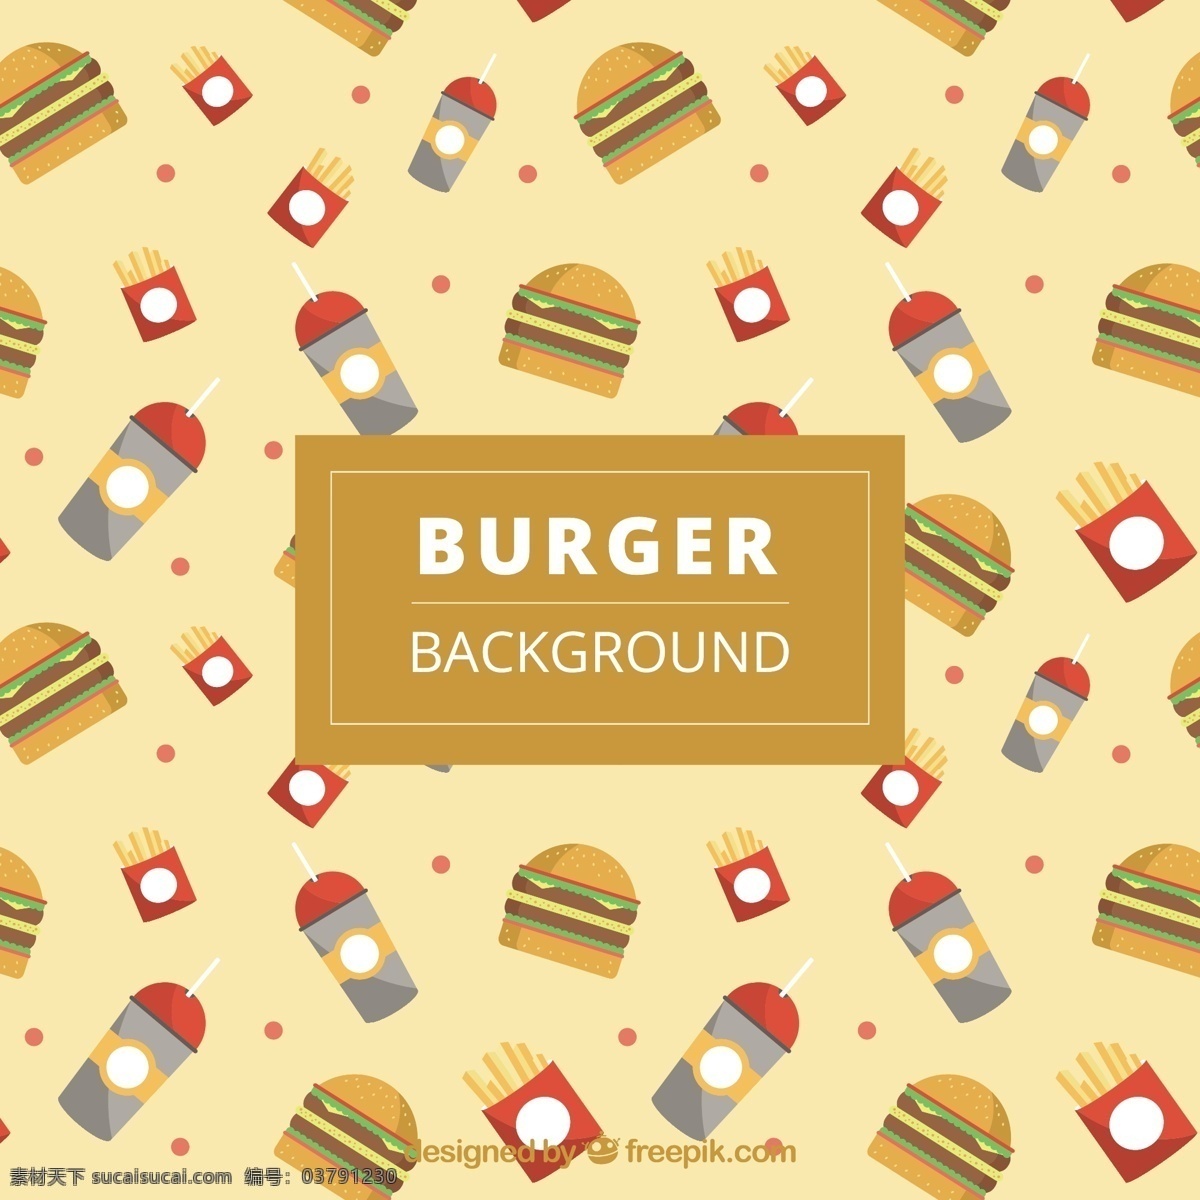 汉堡 平面设计 背景 装饰 饮料 食物 菜单 颜色 公寓 丰富多彩 快餐 食物菜单 吃 汉堡包 午餐 小吃 餐